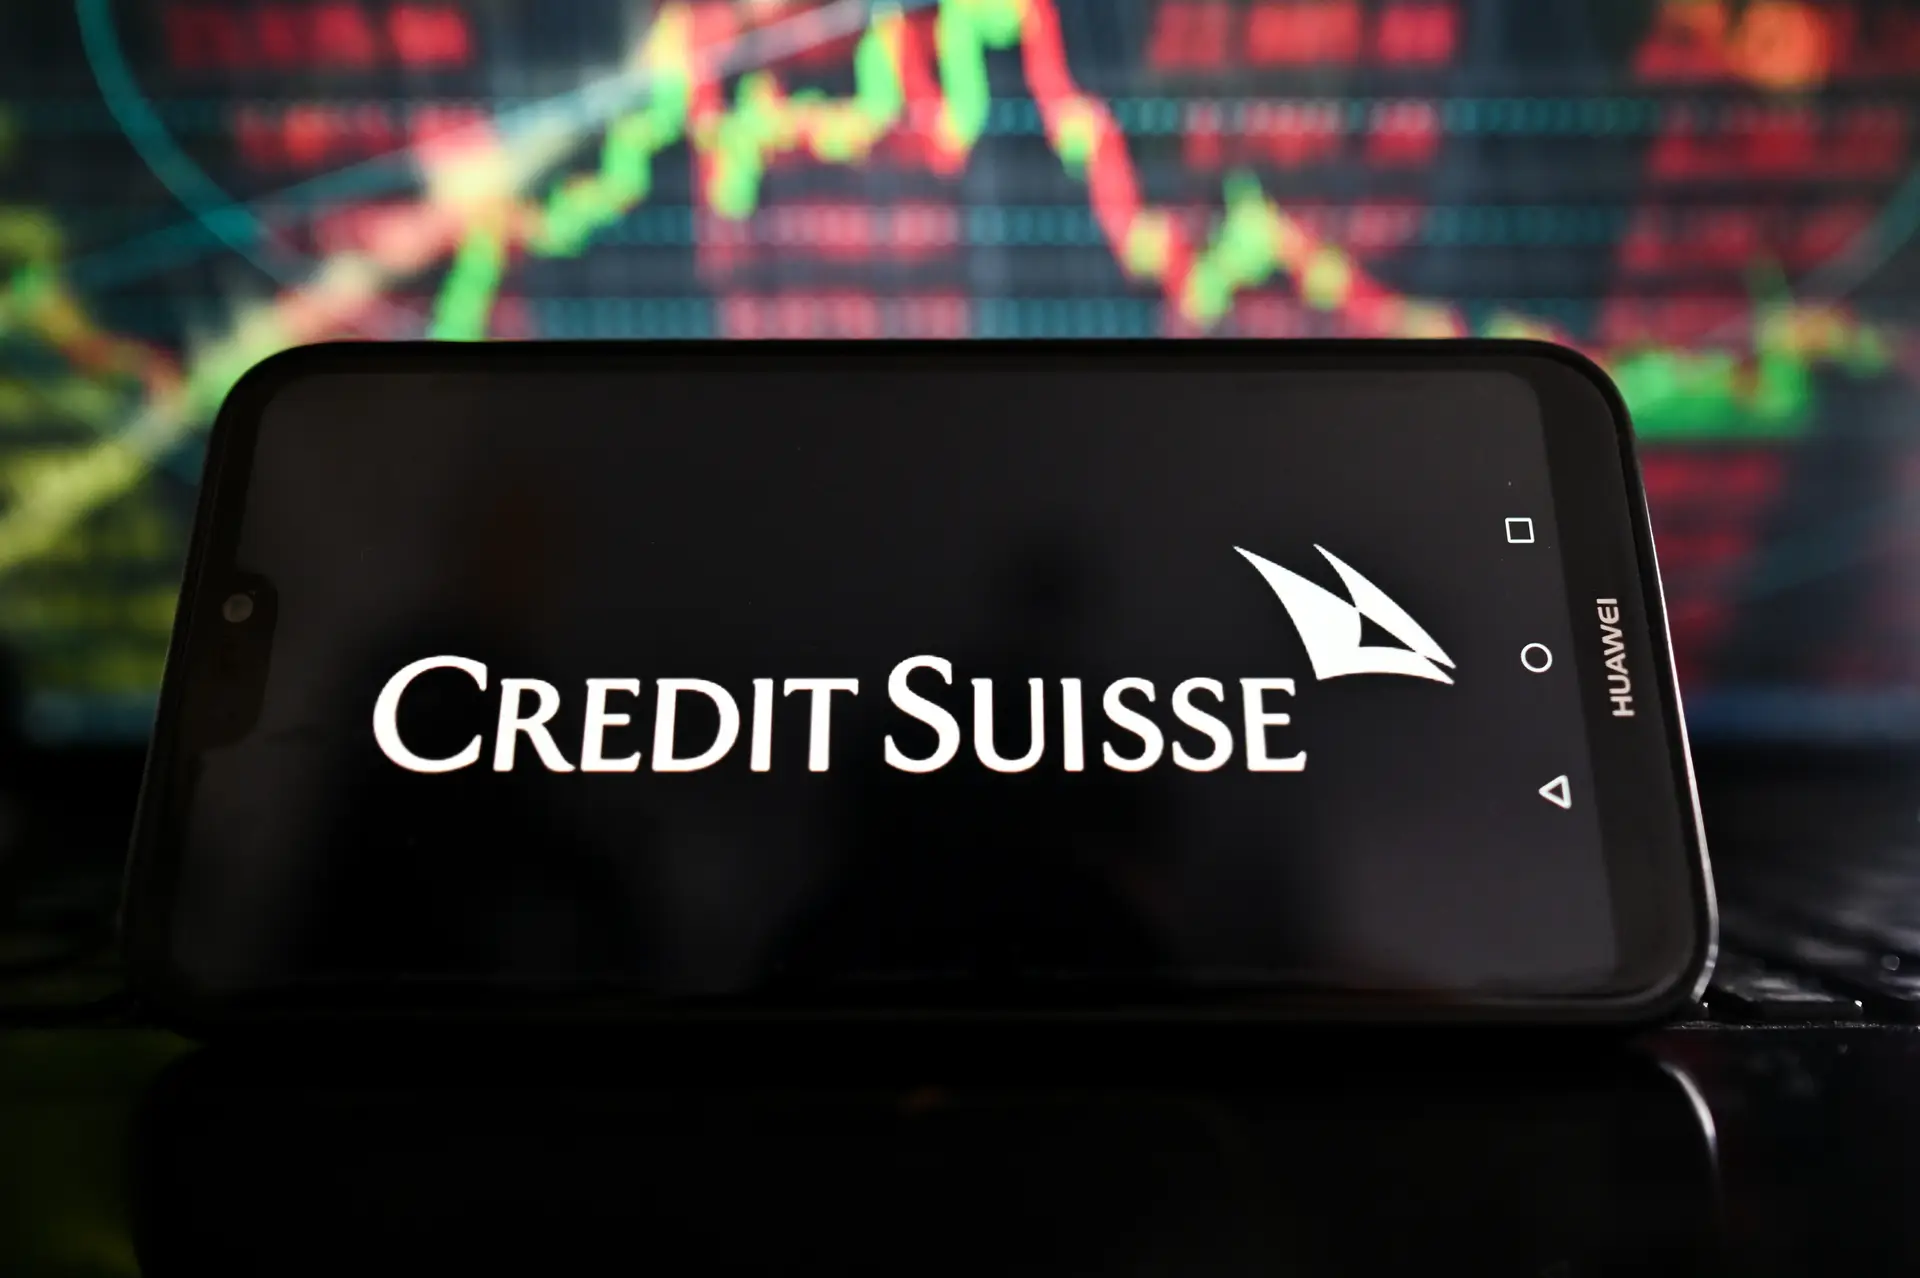 "Lamento muito", declarou o presidente do Credit Suisse aos acionistas na última assembleia geral